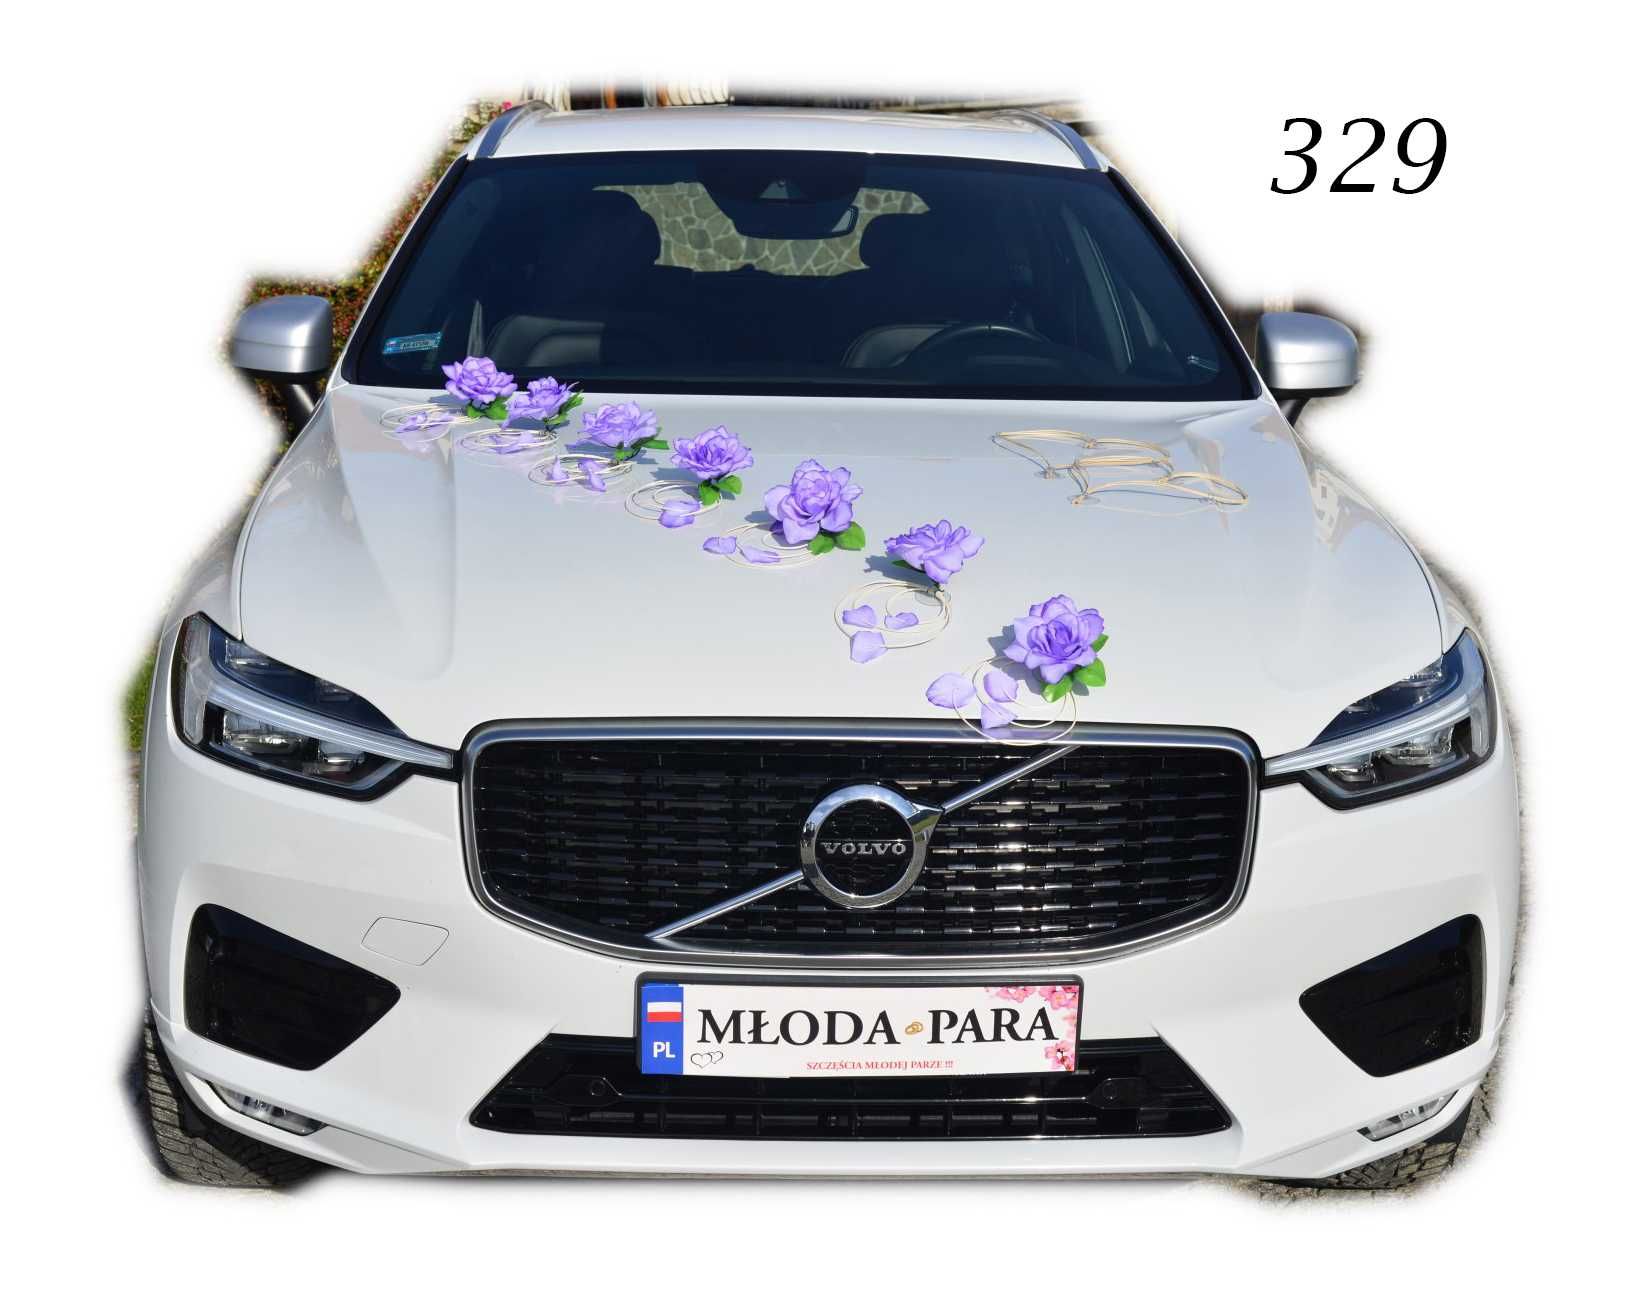 FIOLET dekoracja ozdoba stroik na auto samochód ślub wesele Nr 329